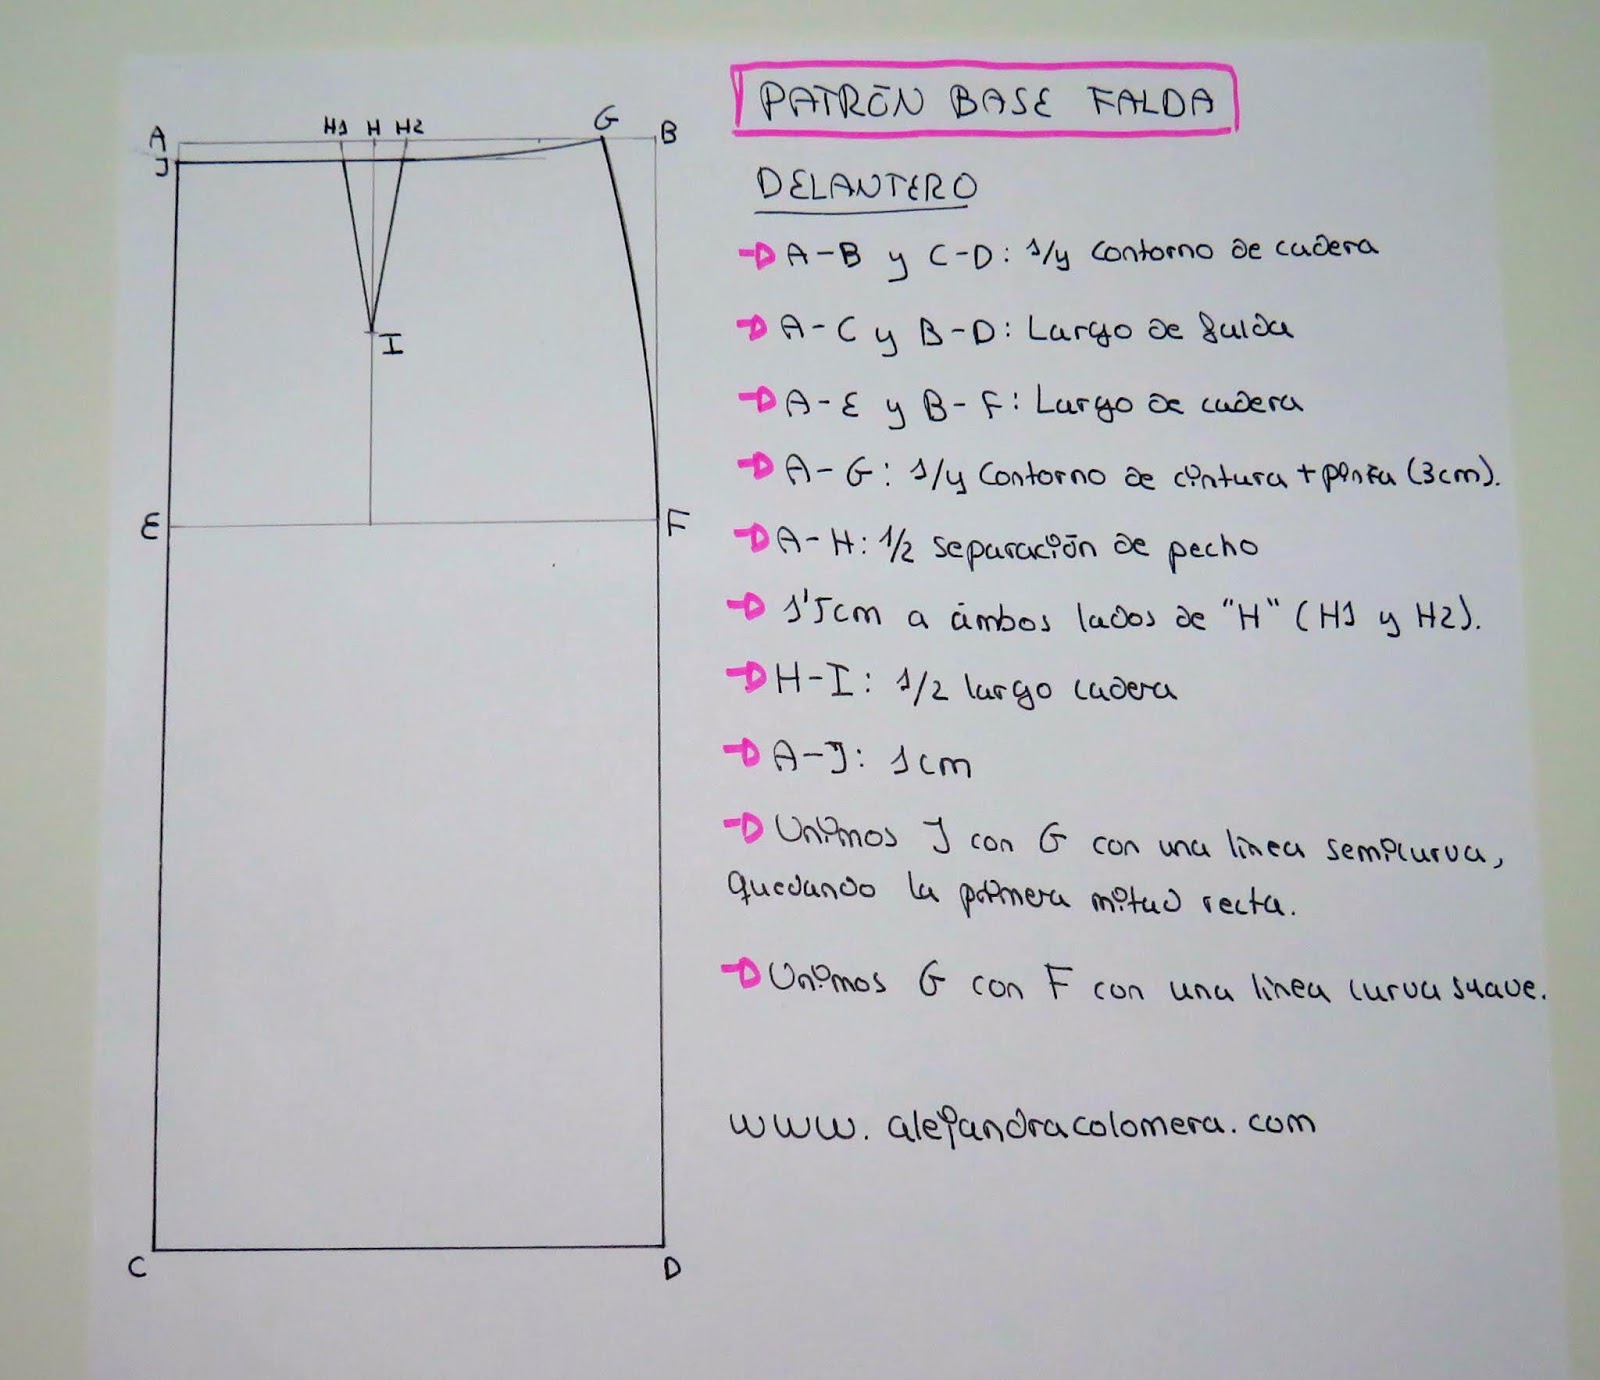 ayuda mariposa biografía Cómo hacer el patrón base de una falda (tutorial) - Alejandra Colomera |  Acf Studio